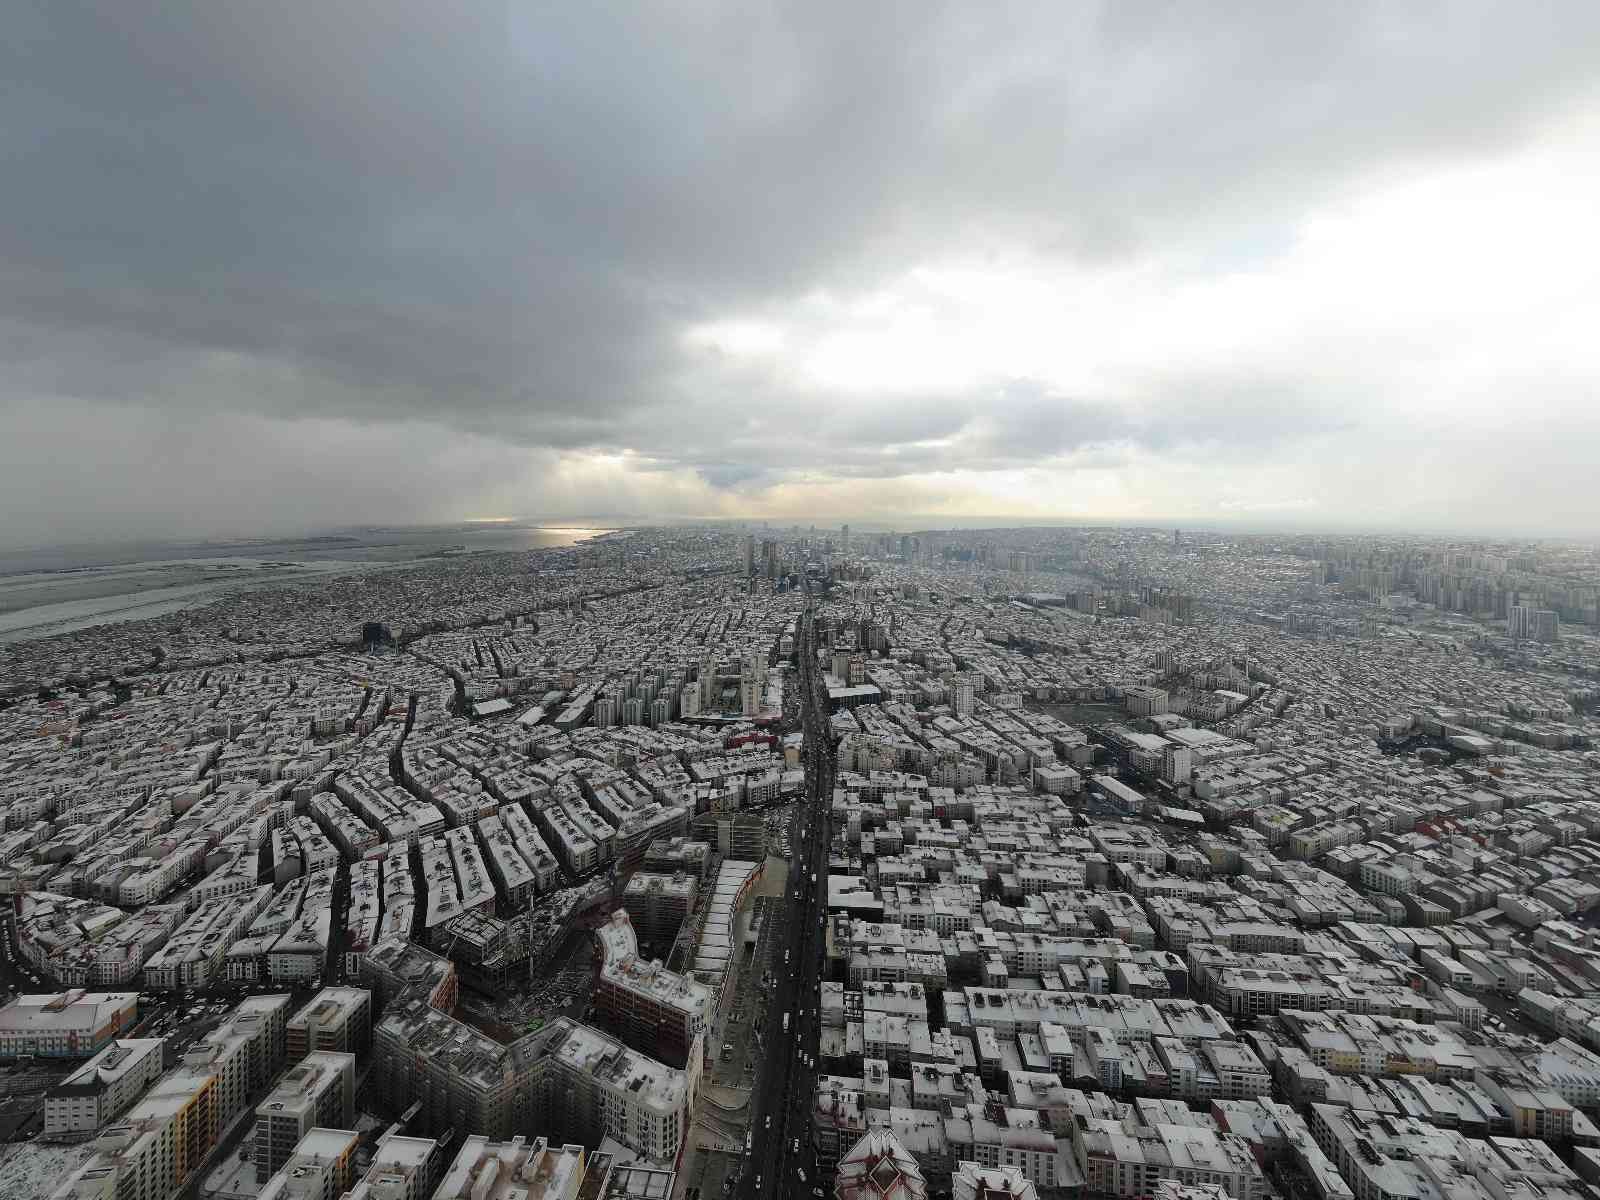 Beyaz örtü ile kaplanan çatılar havadan görüntülendi #istanbul